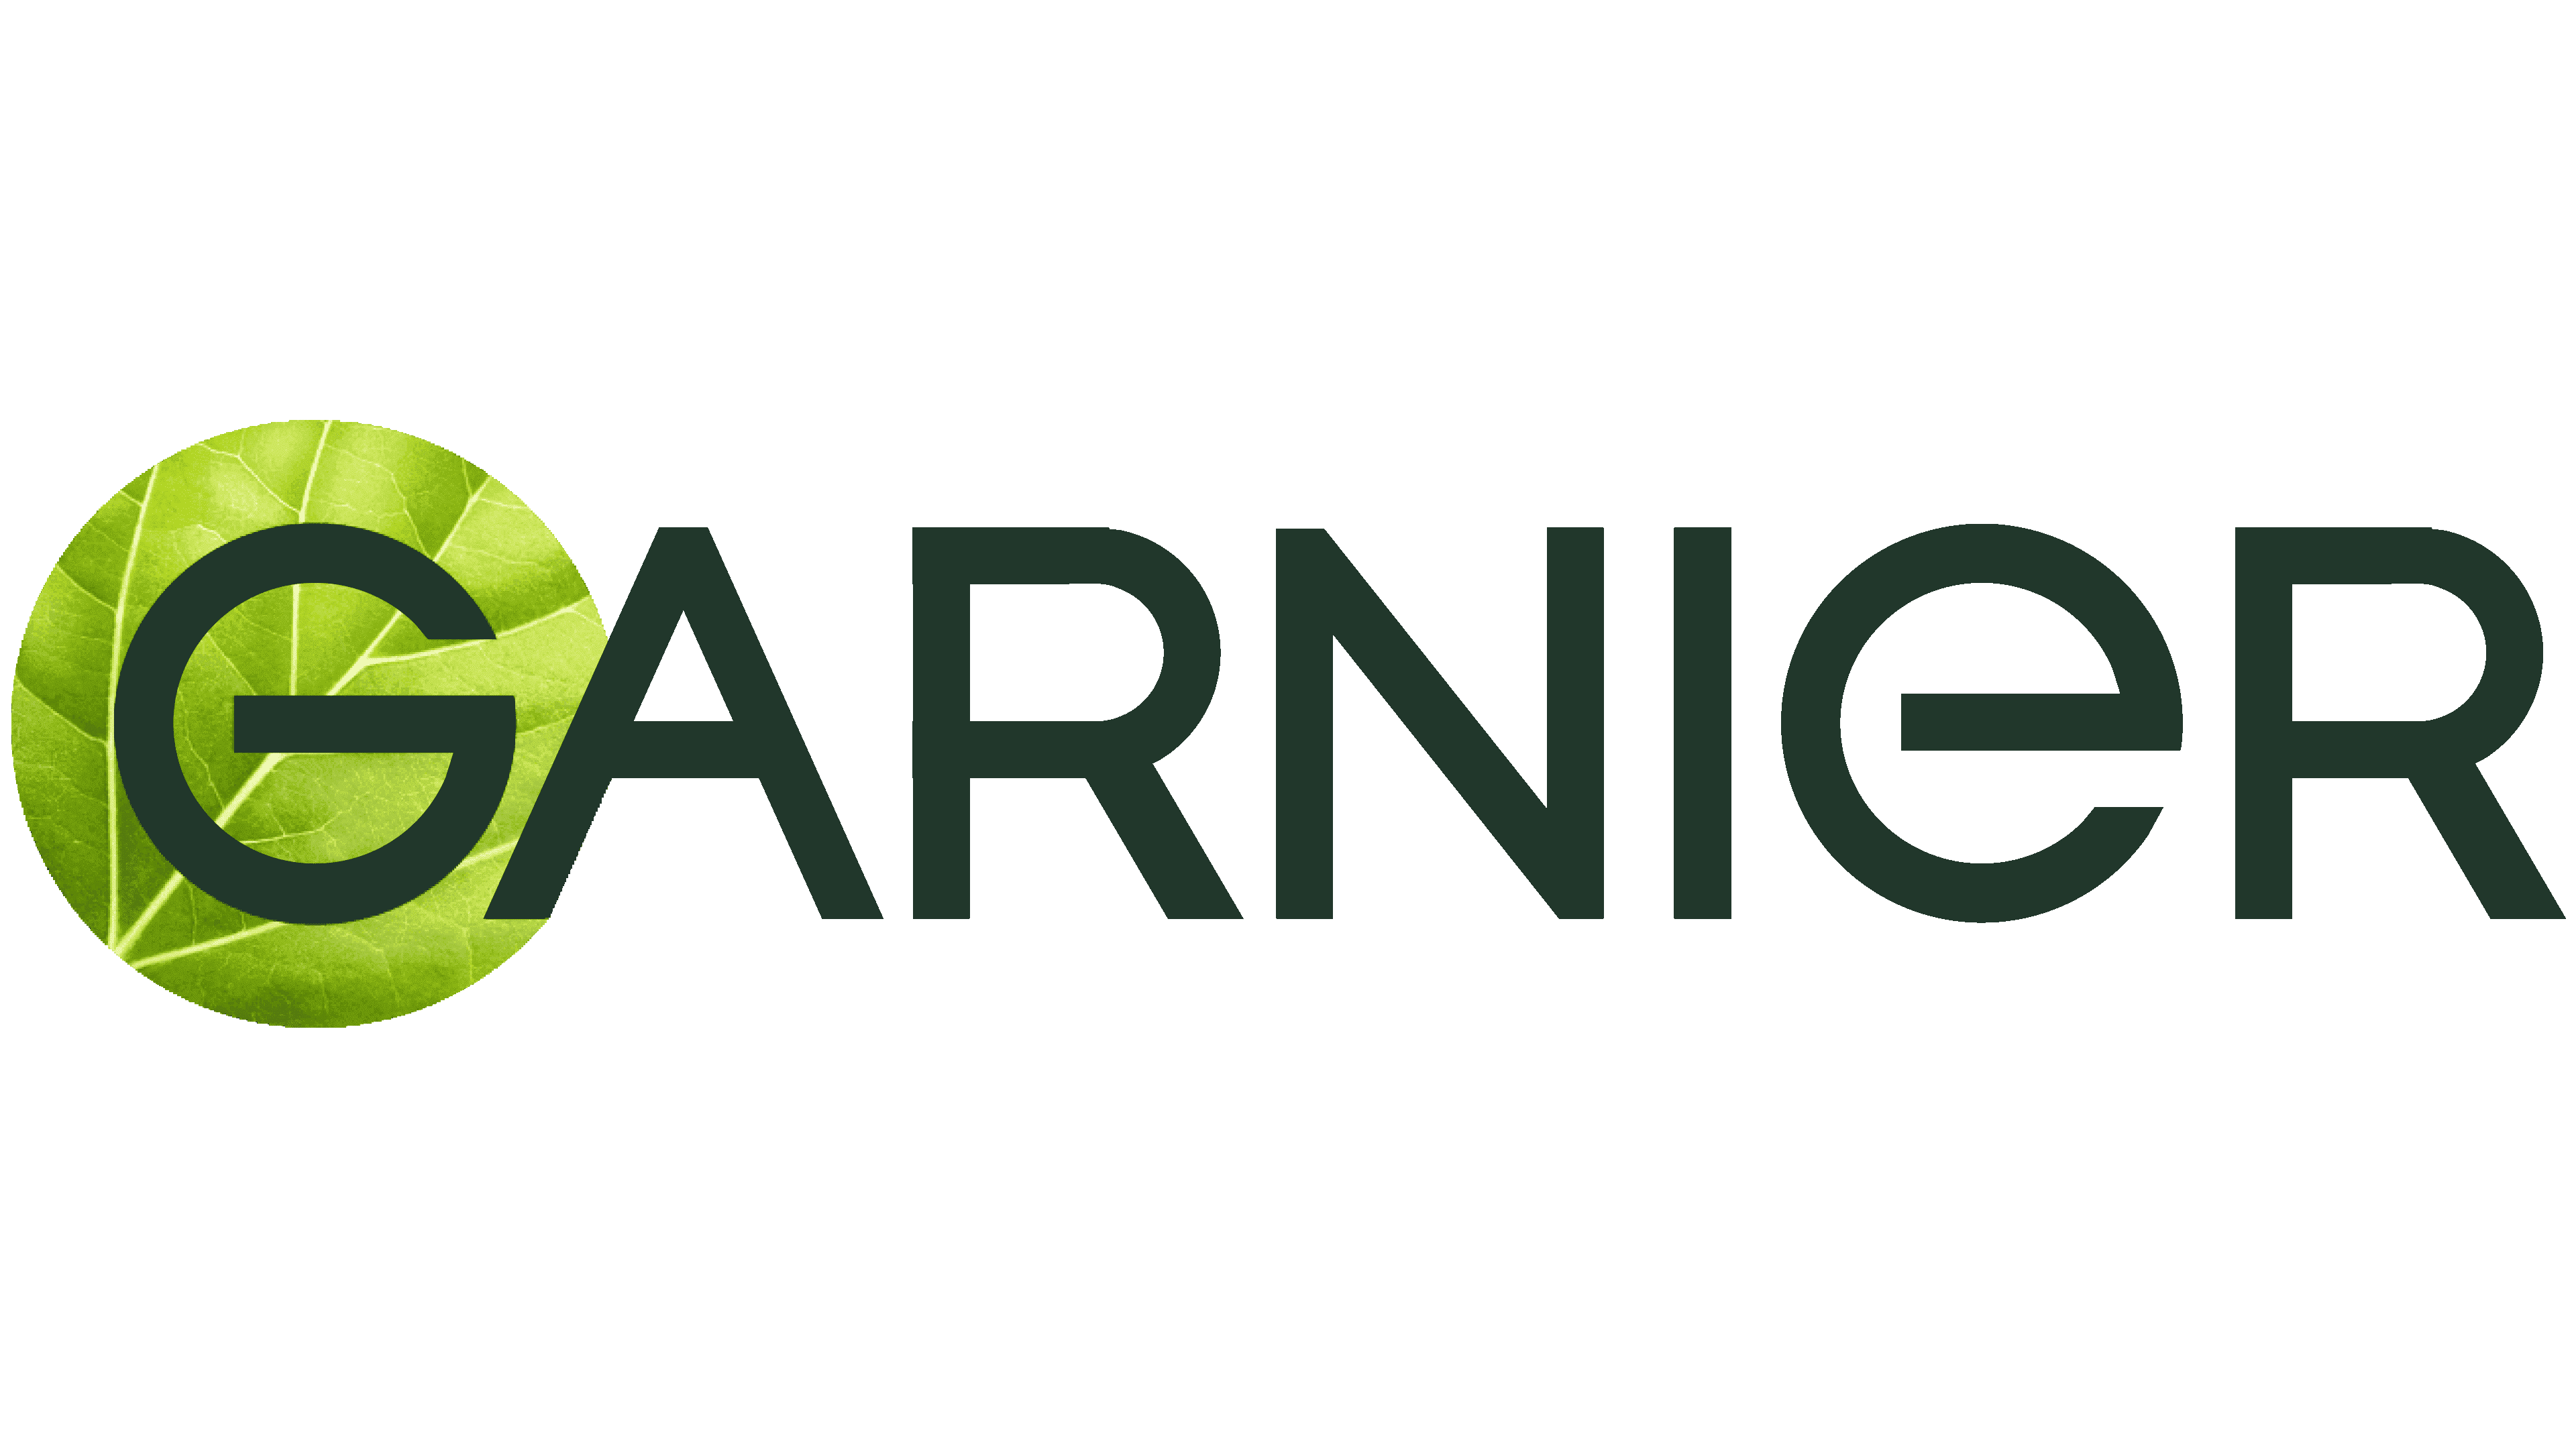 گارنیر - Garnier